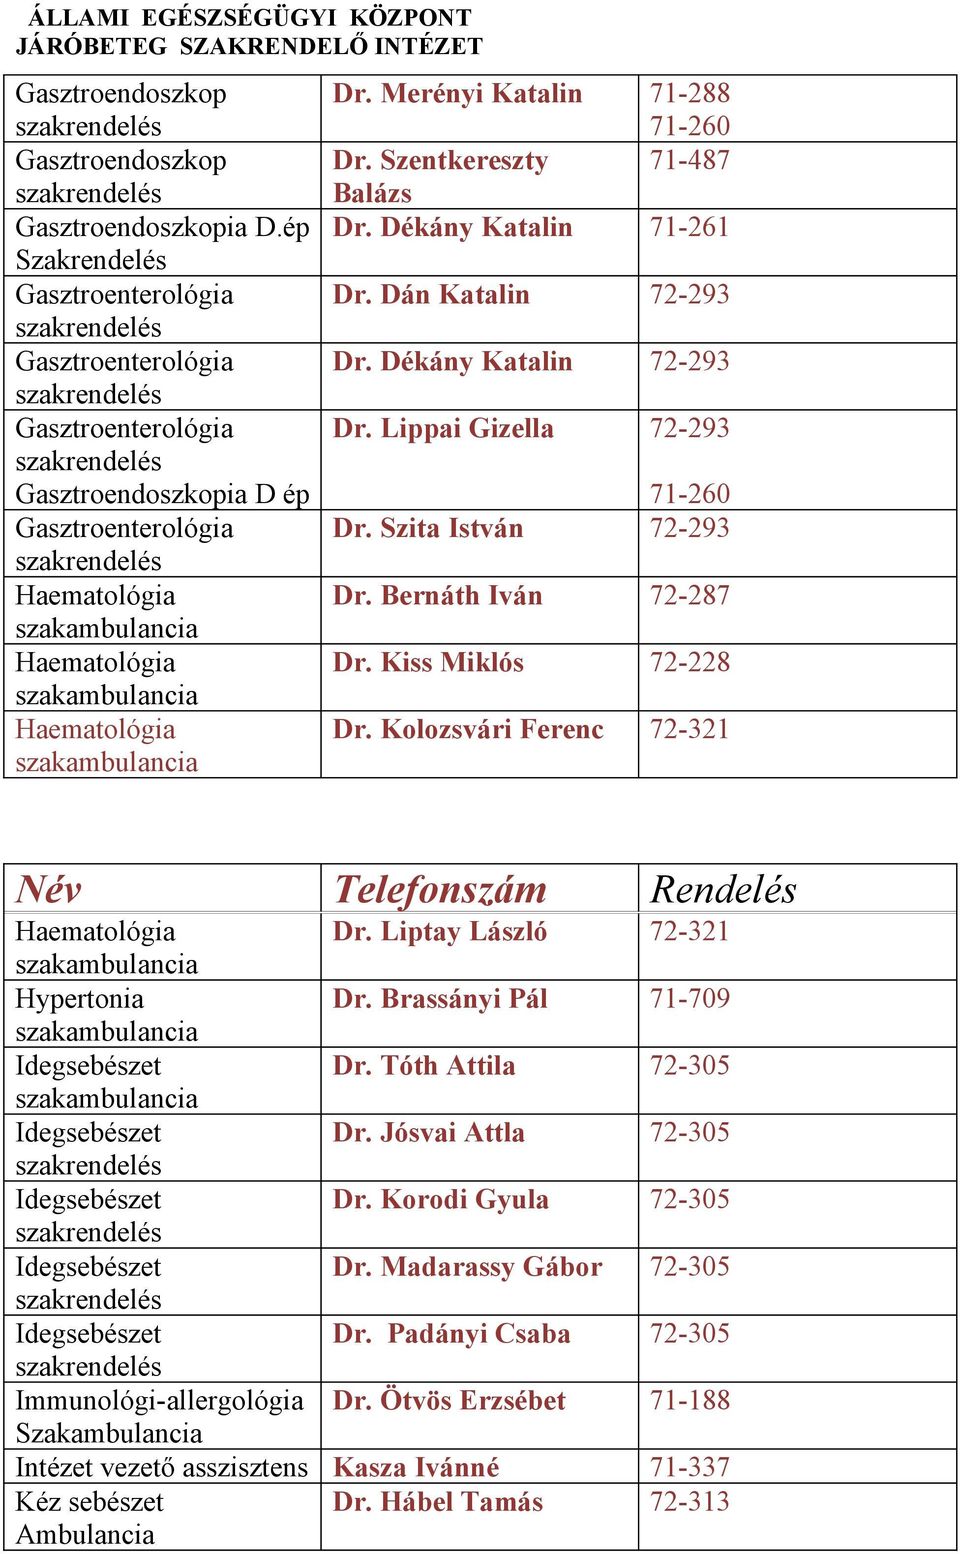 Kiss Miklós 72-228 Dr. Kolozsvári Ferenc 72-321 Dr. Liptay László 72-321 Hypertonia Dr. Brassányi Pál 71-709 Dr. Tóth Attila 72-305 Dr. Jósvai Attla 72-305 Dr.